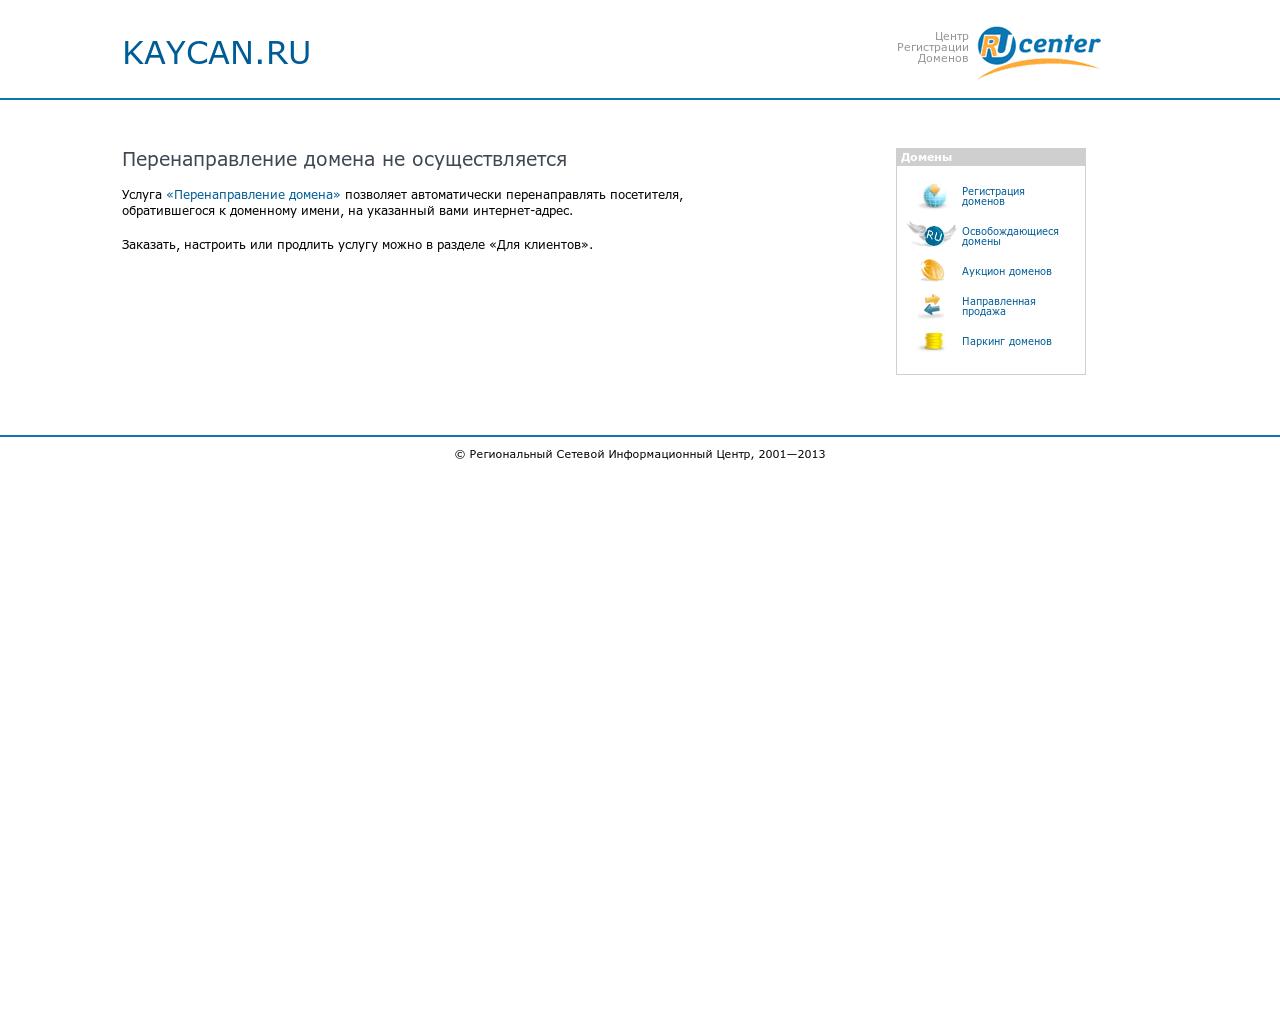 Изображение сайта kaycan.ru в разрешении 1280x1024